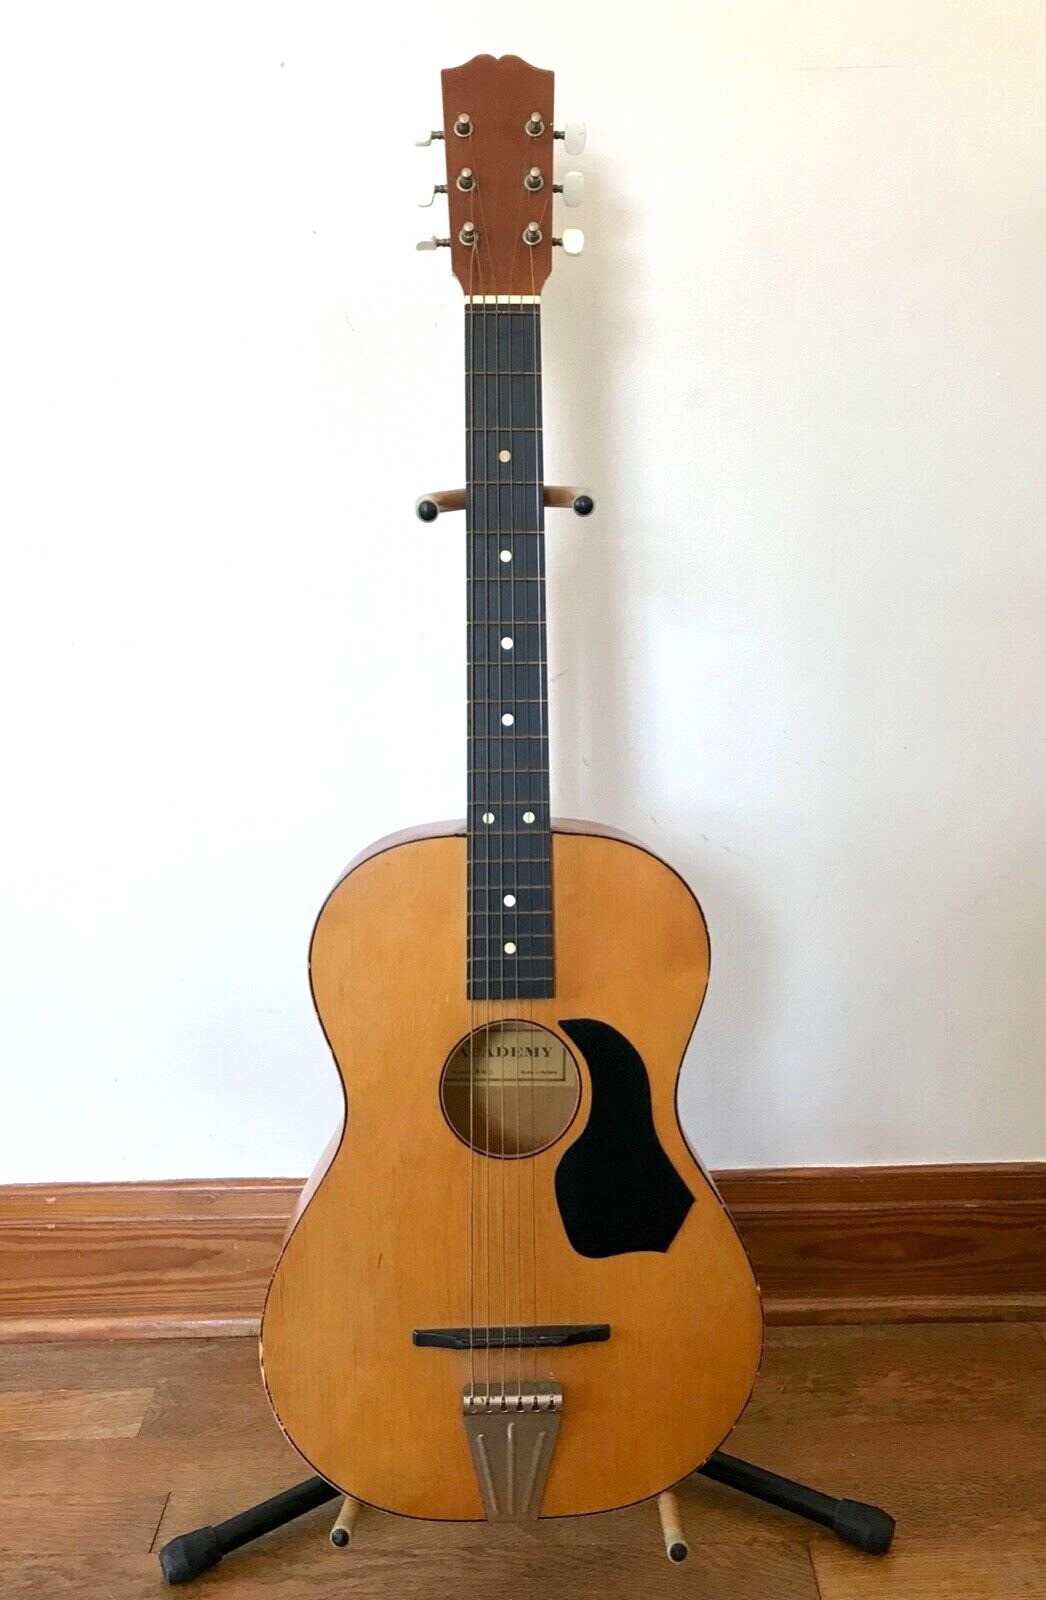 1960s Egmond Academy Acoustic Guitar w/ Case. Model A10-S